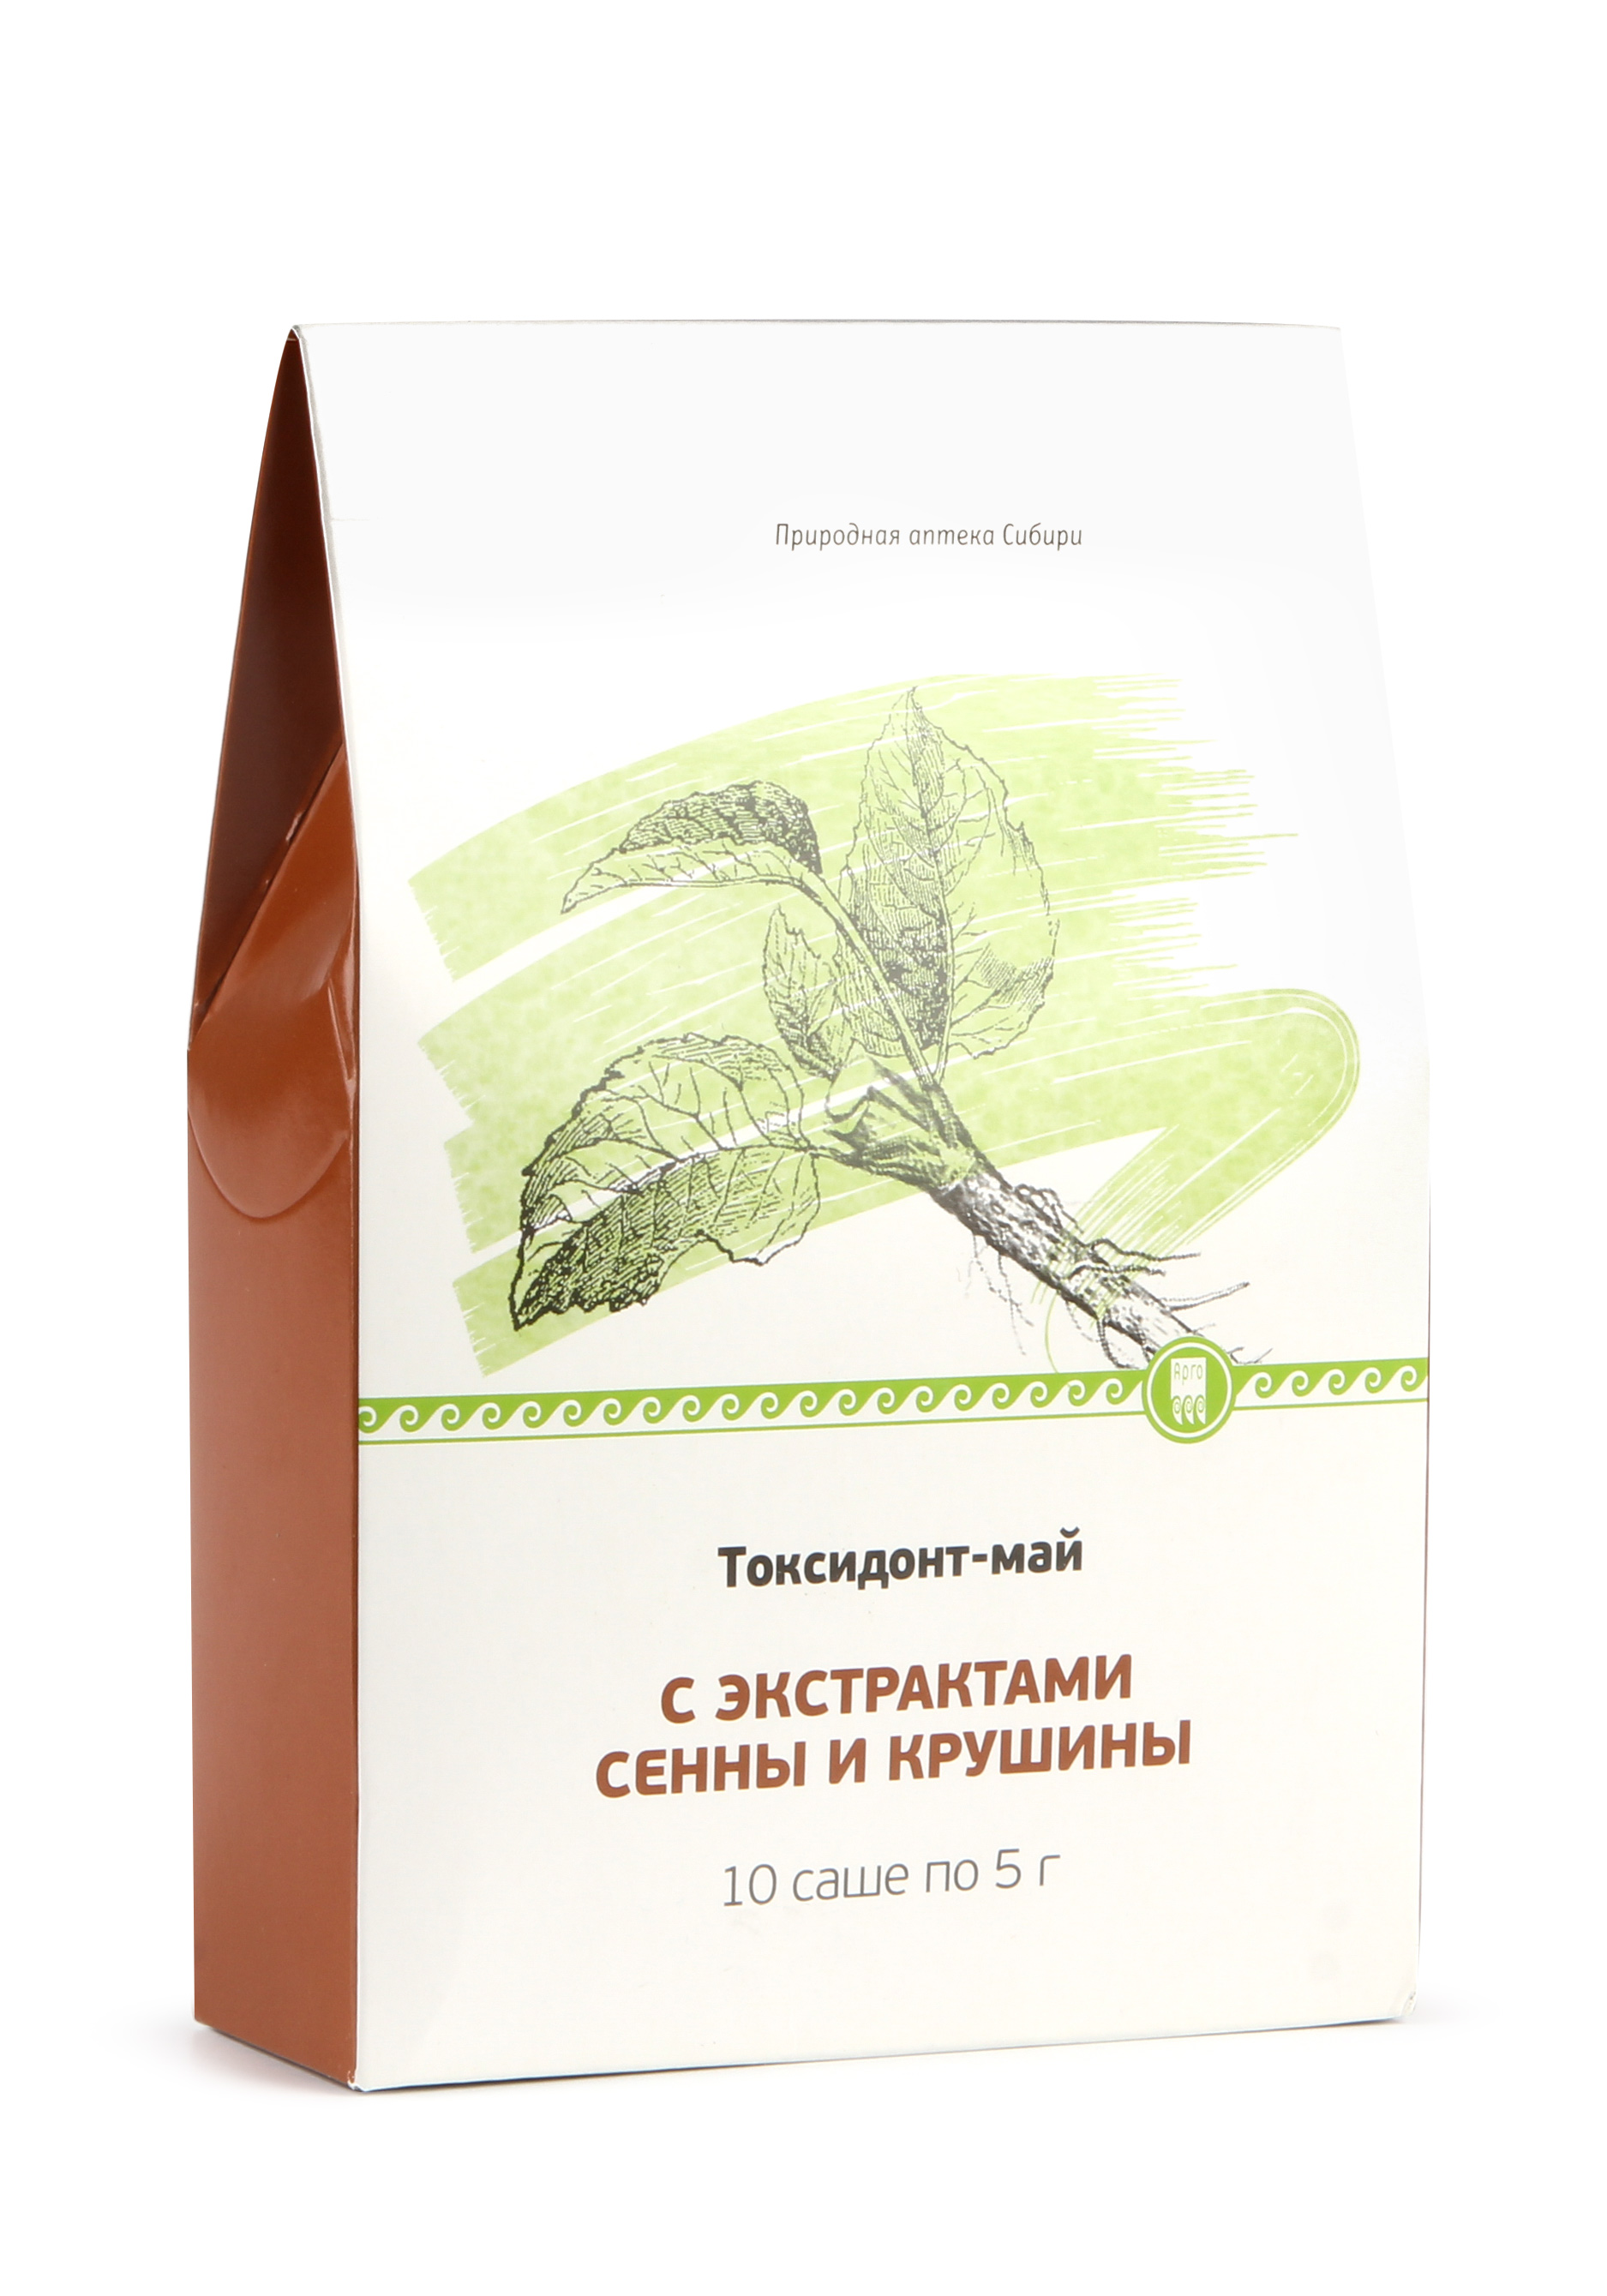 Экстракт растительный "Токсидонт-май" для очищения ЖКТ Природная аптека Сибири - фото 2